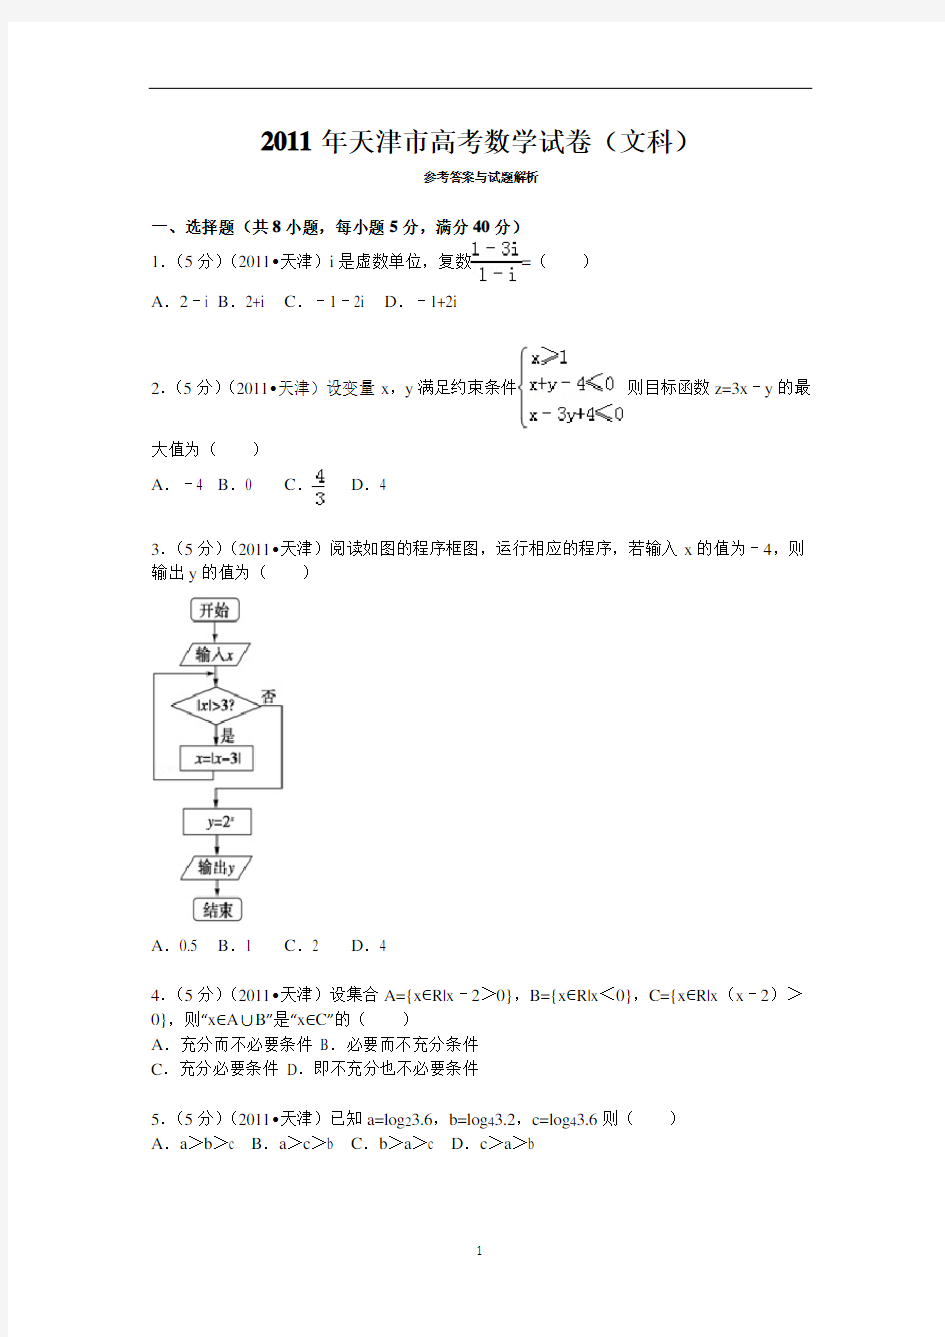 2011年高考真题——文科数学(天津卷)